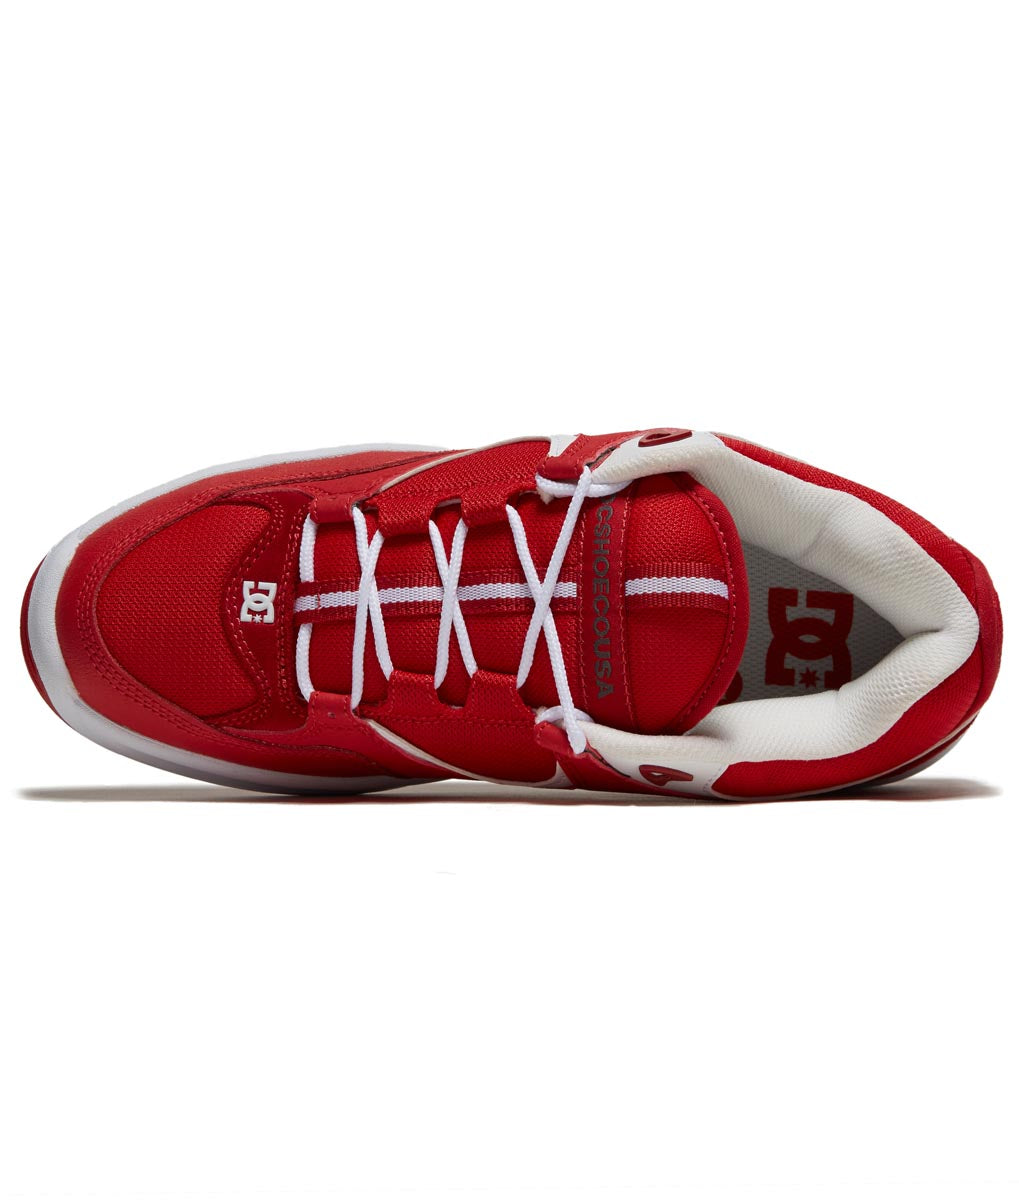 DC Kalynx Zero Shoes - Red/White image 3